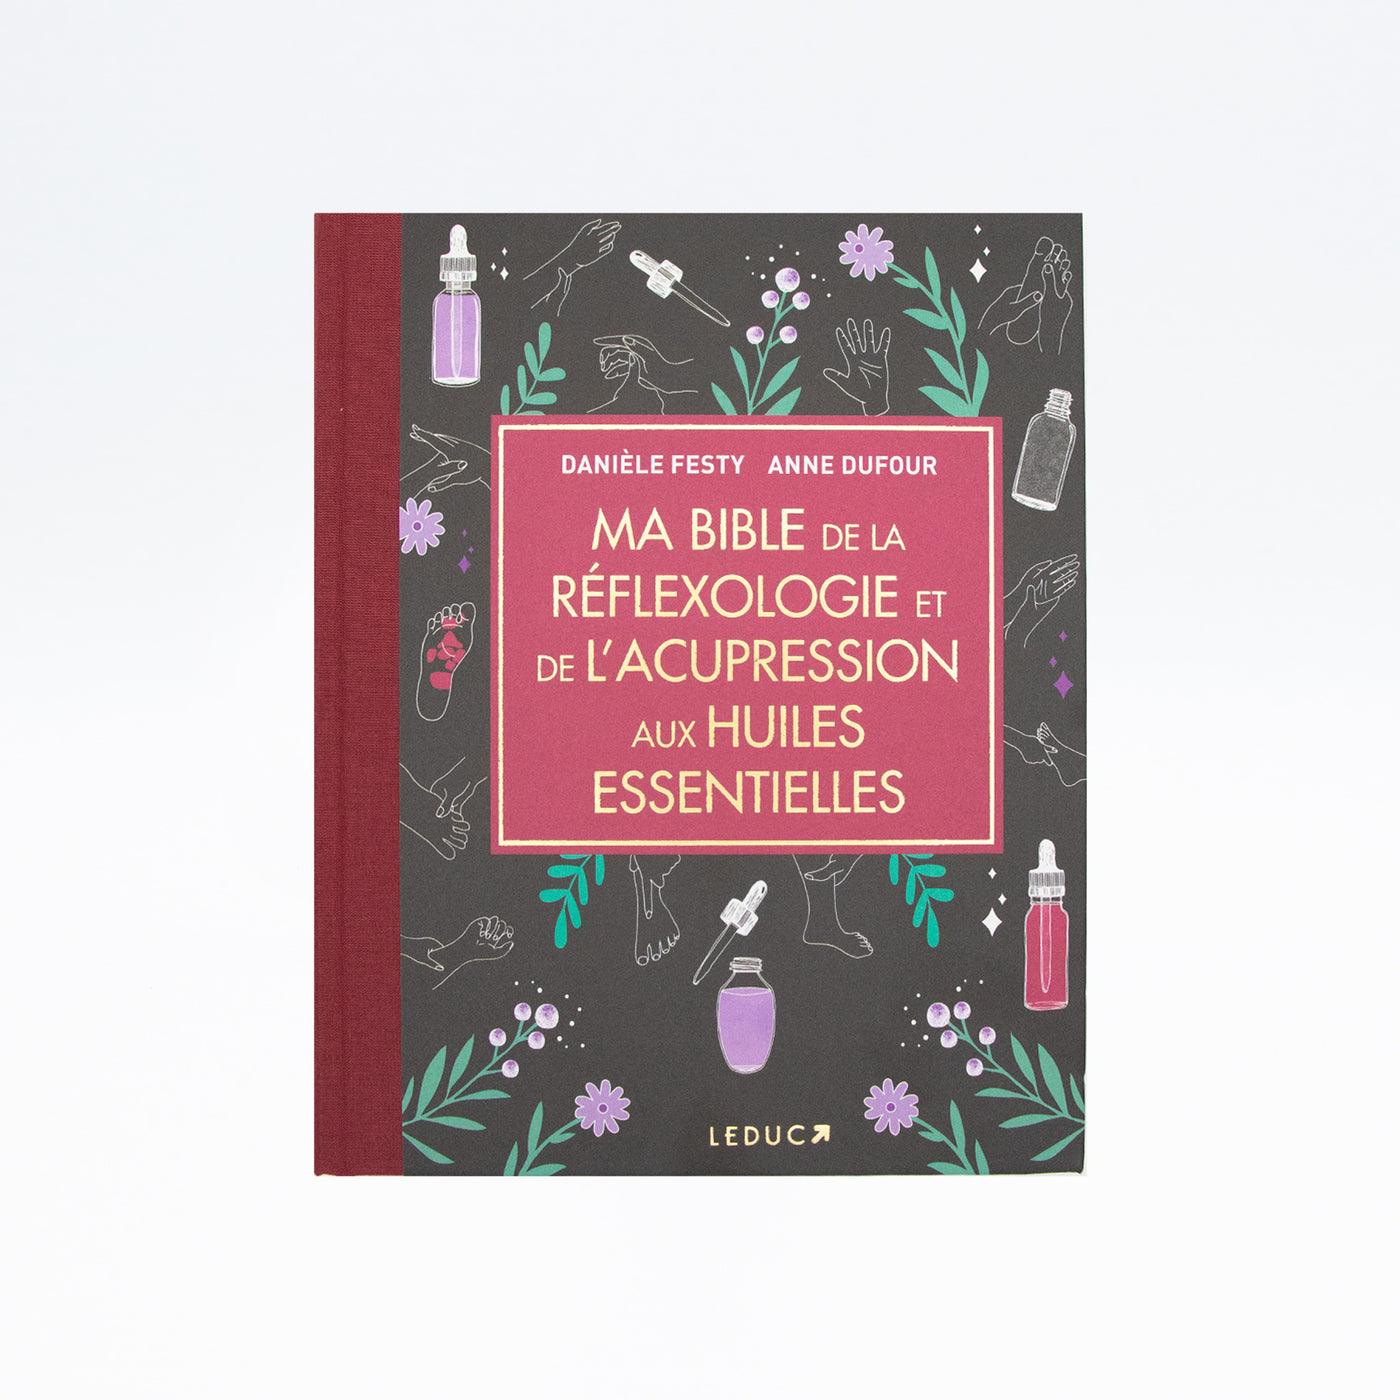 LIVRE MA BIBLE DE LA RÉFLEXOLOGIE ET DE L'ACUPRESSION AUX HUILES ESSENTIELLES